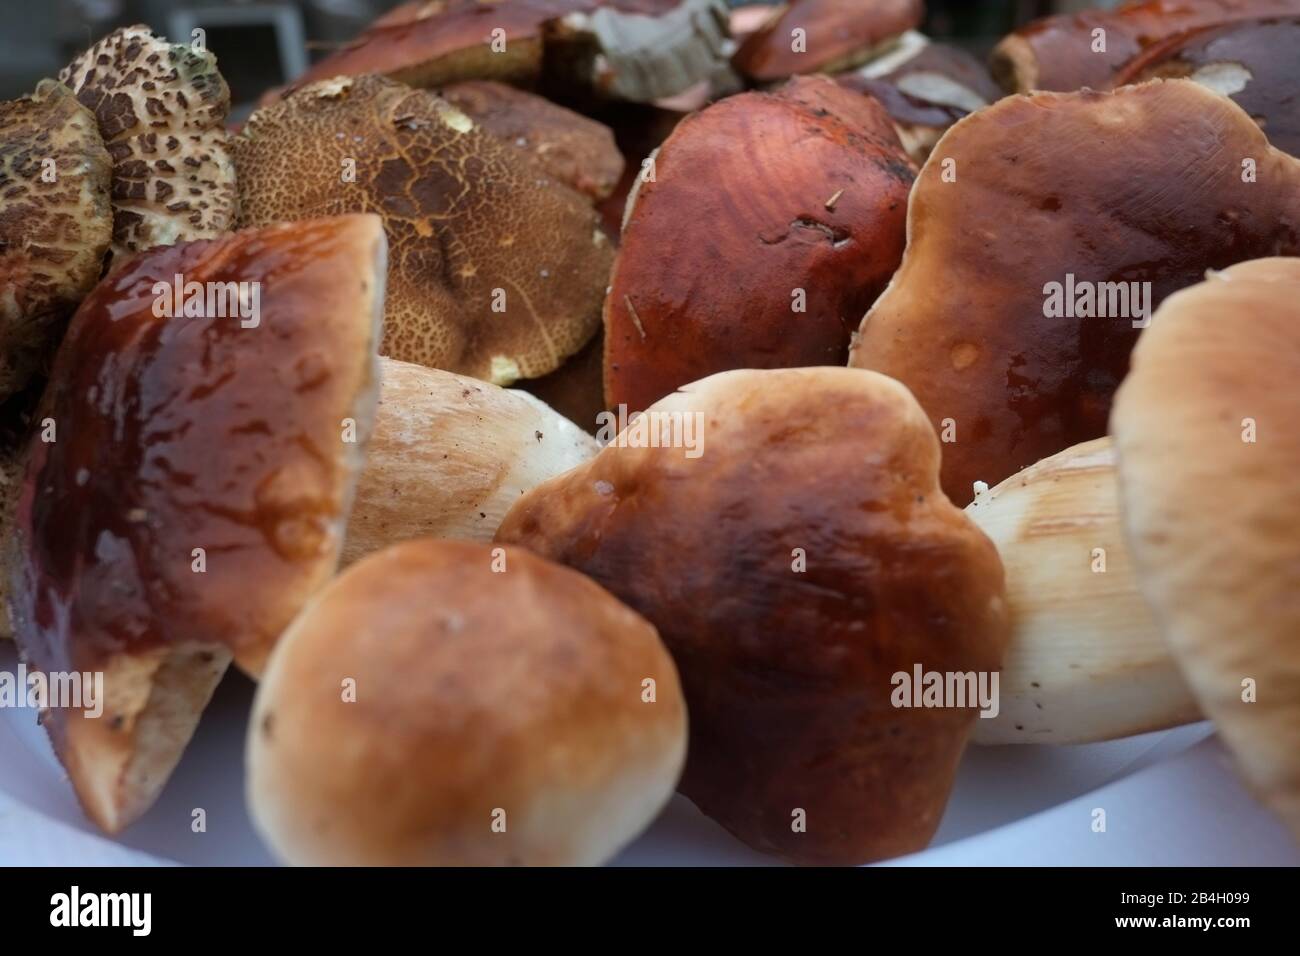 Freshly picked mushrooms - Boletus edulis Stock Photo